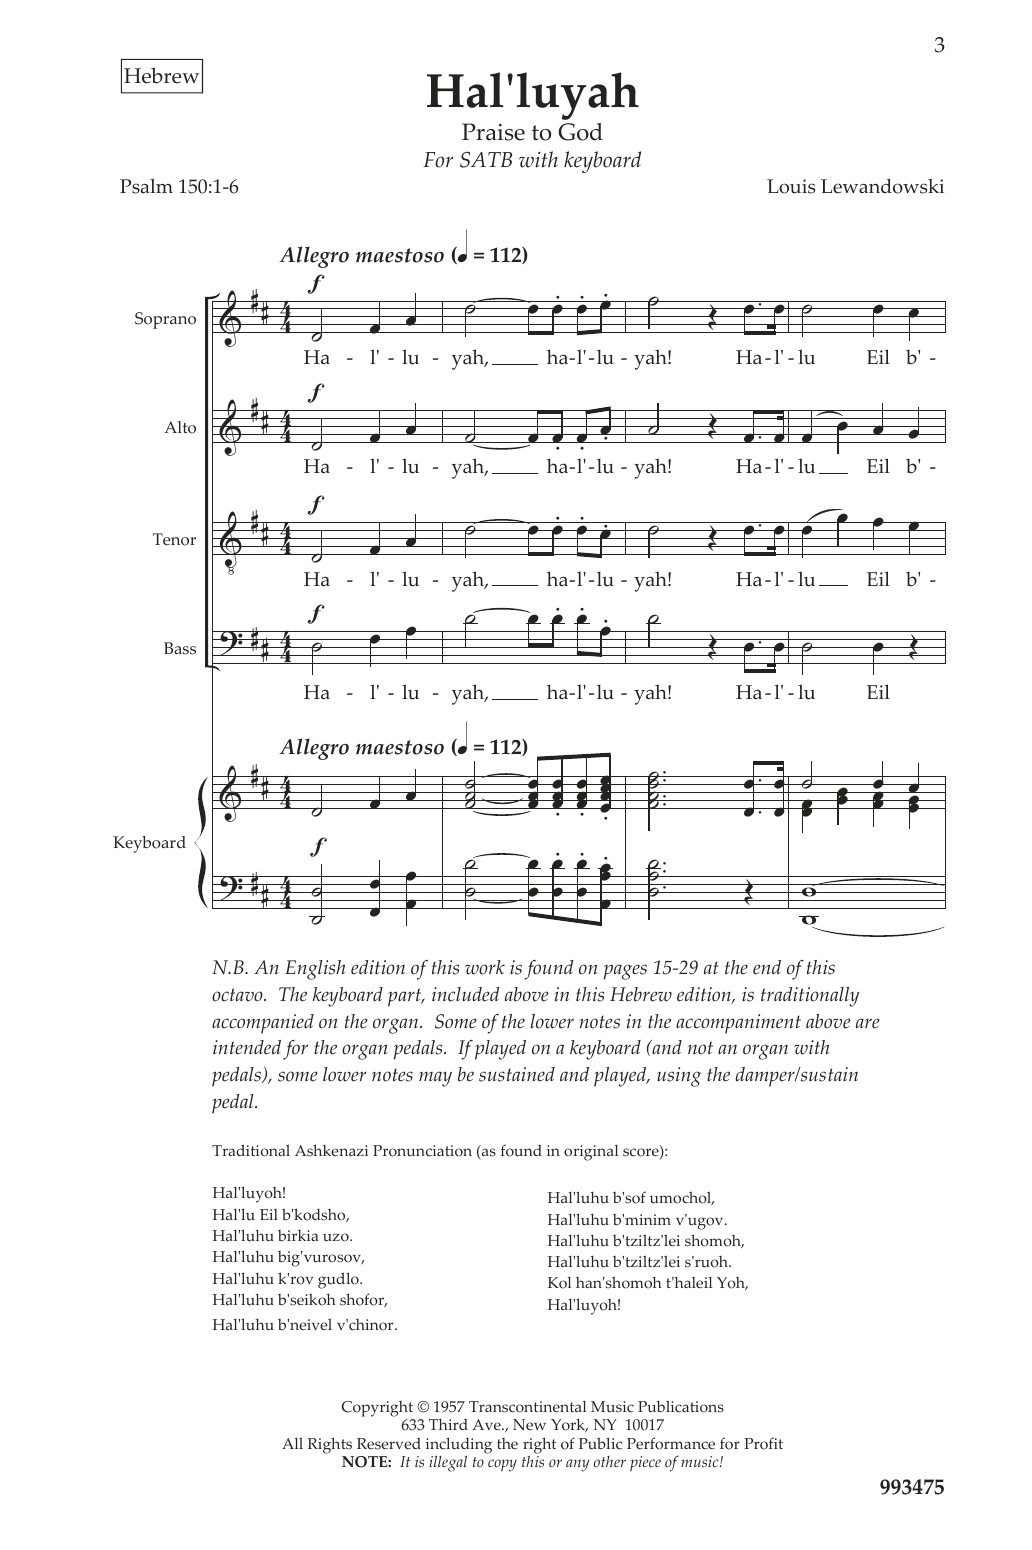 Louis Lewandowski Hal Luyah Sheet Music Notes & Chords for SATB - Download or Print PDF